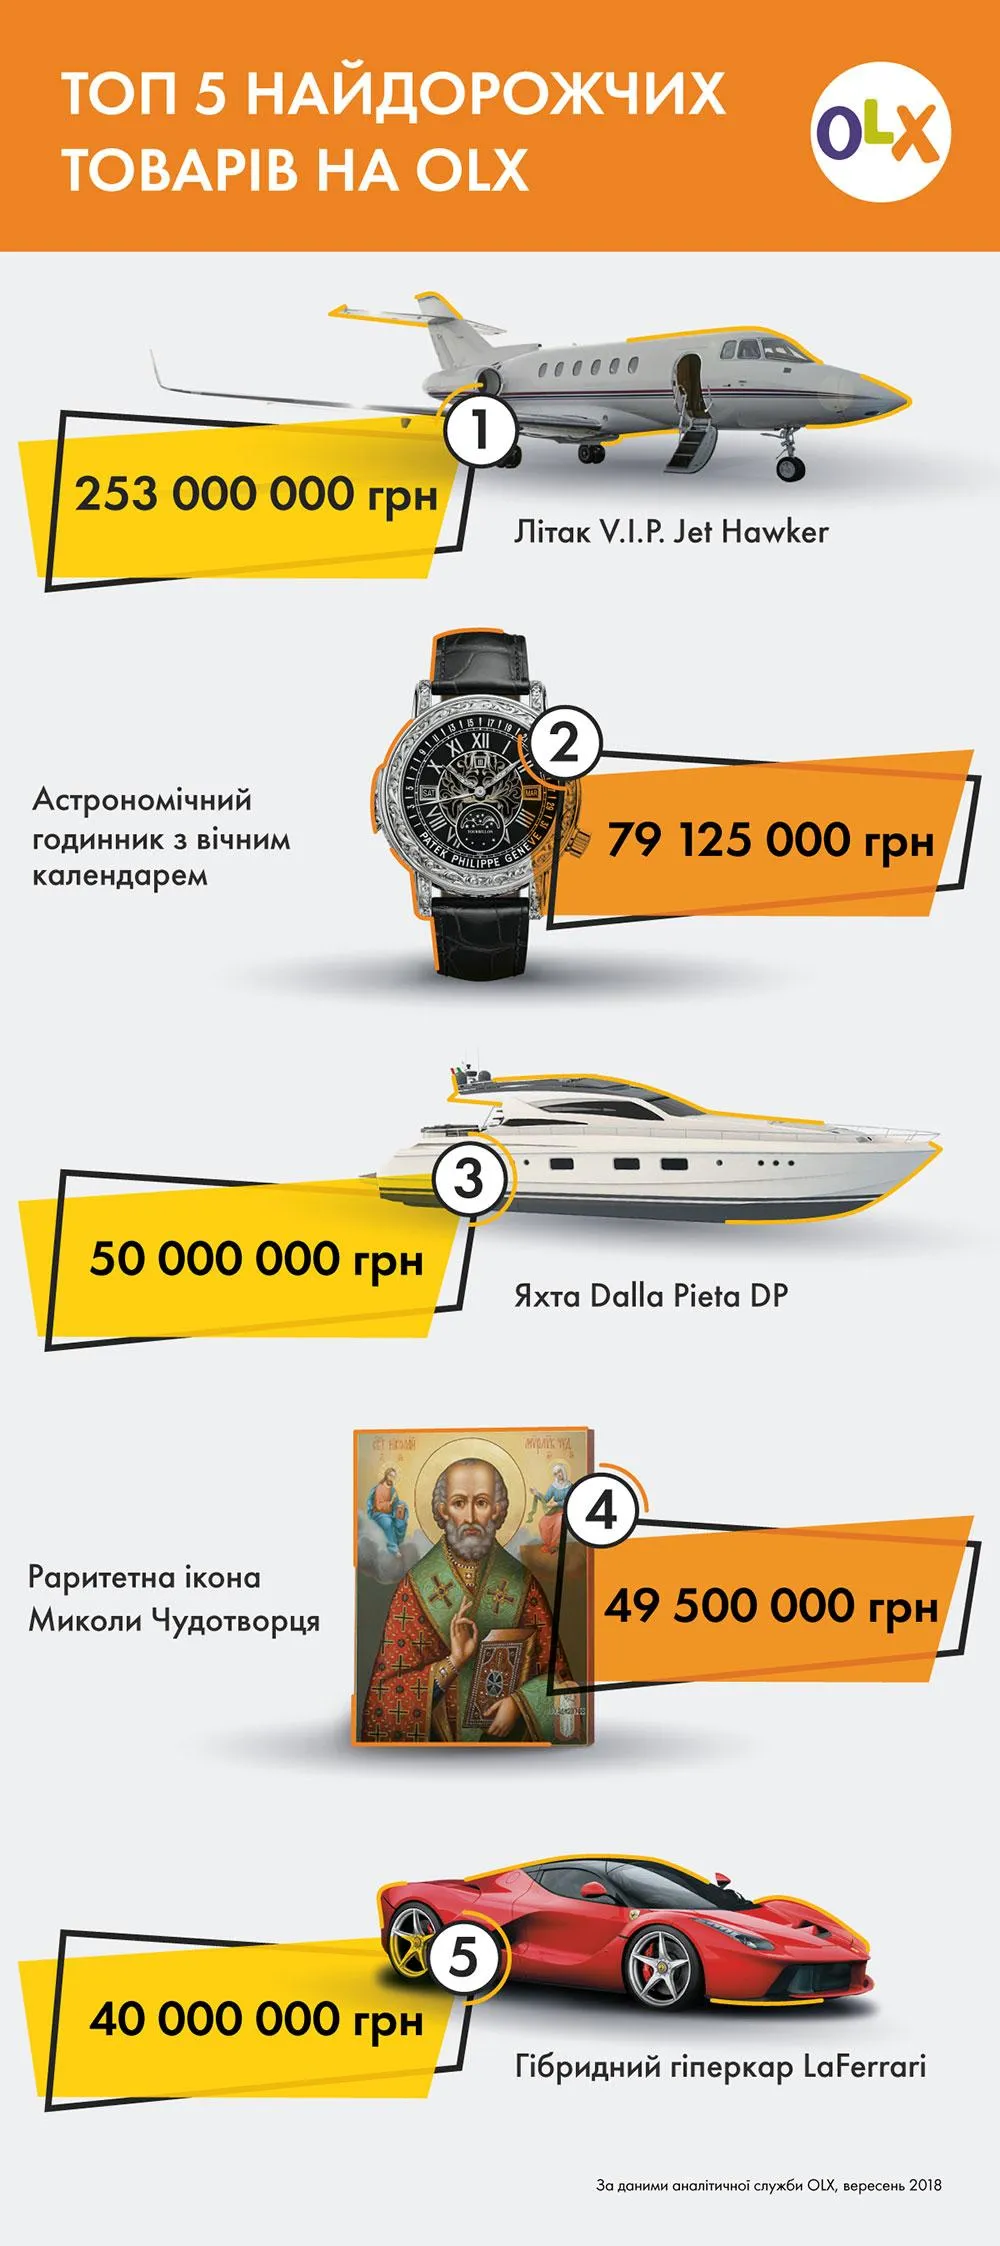 Найдорожчі речі, що продають українці на OLX